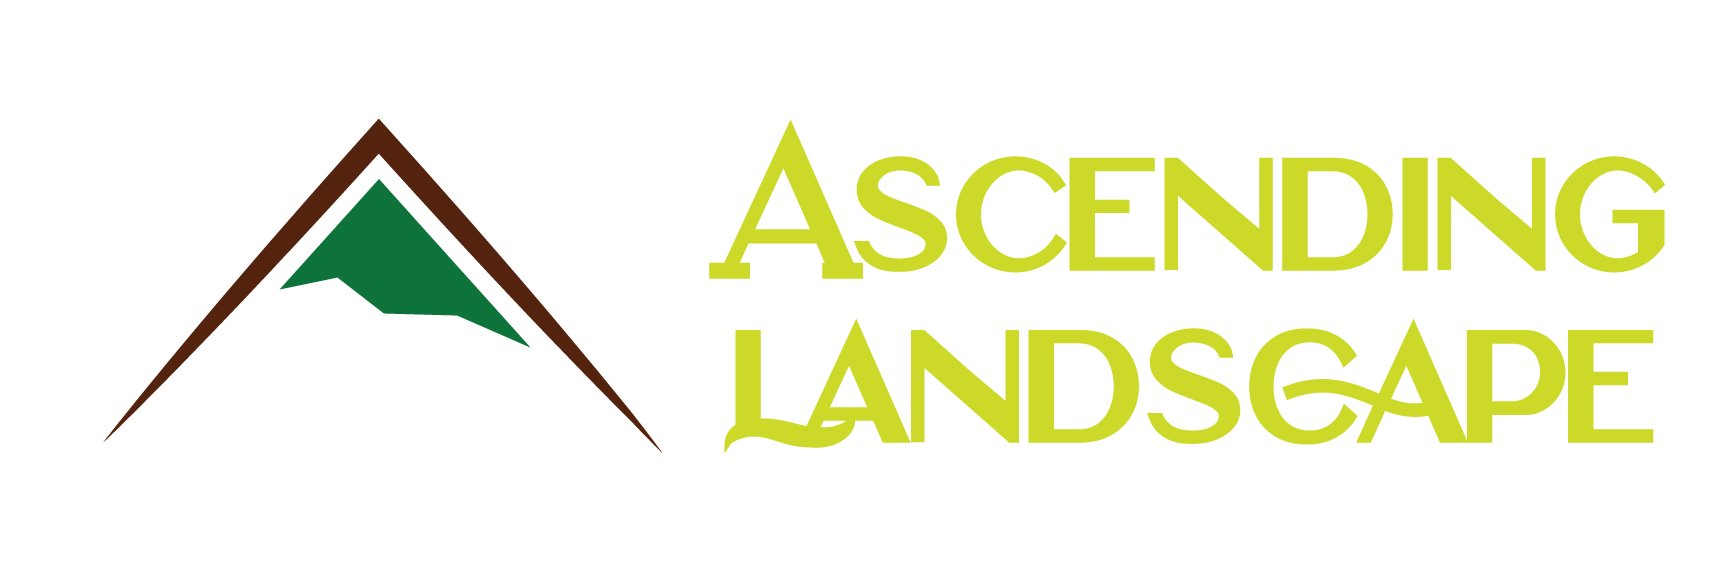 Ascending Landscape LLC Logo